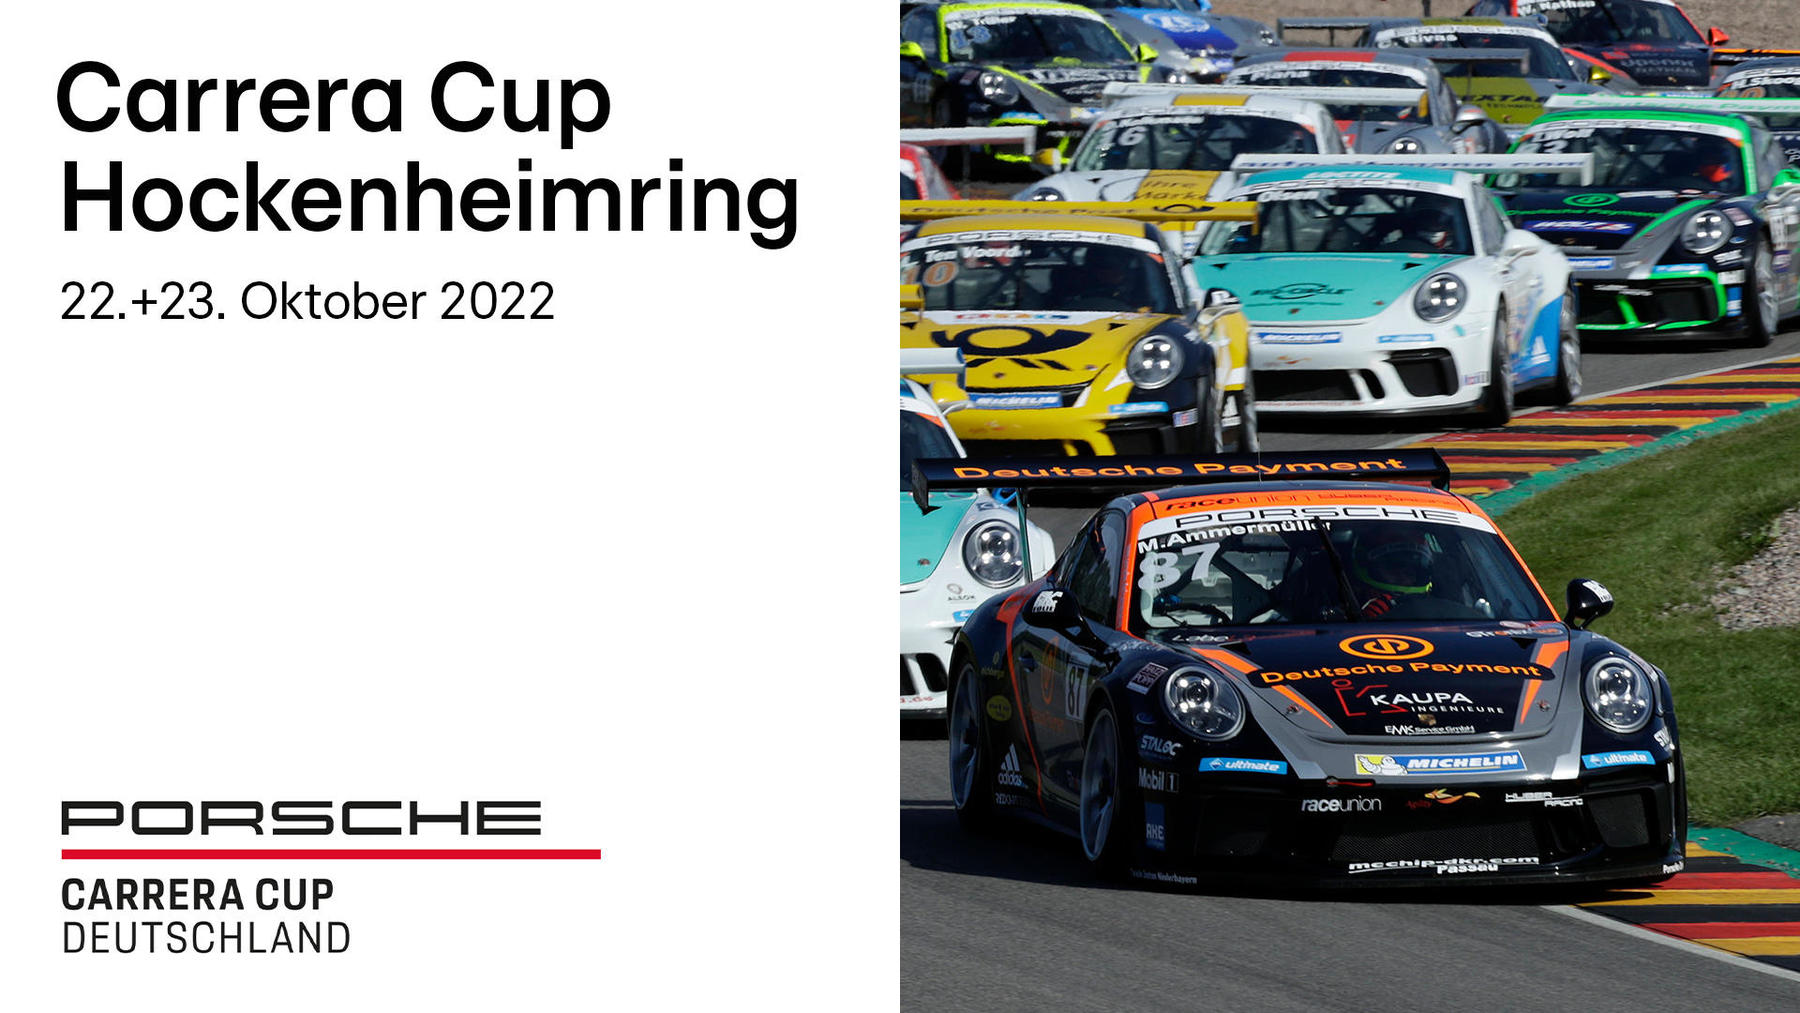 22.+23.10. | Carrera Cup Hockenheimring